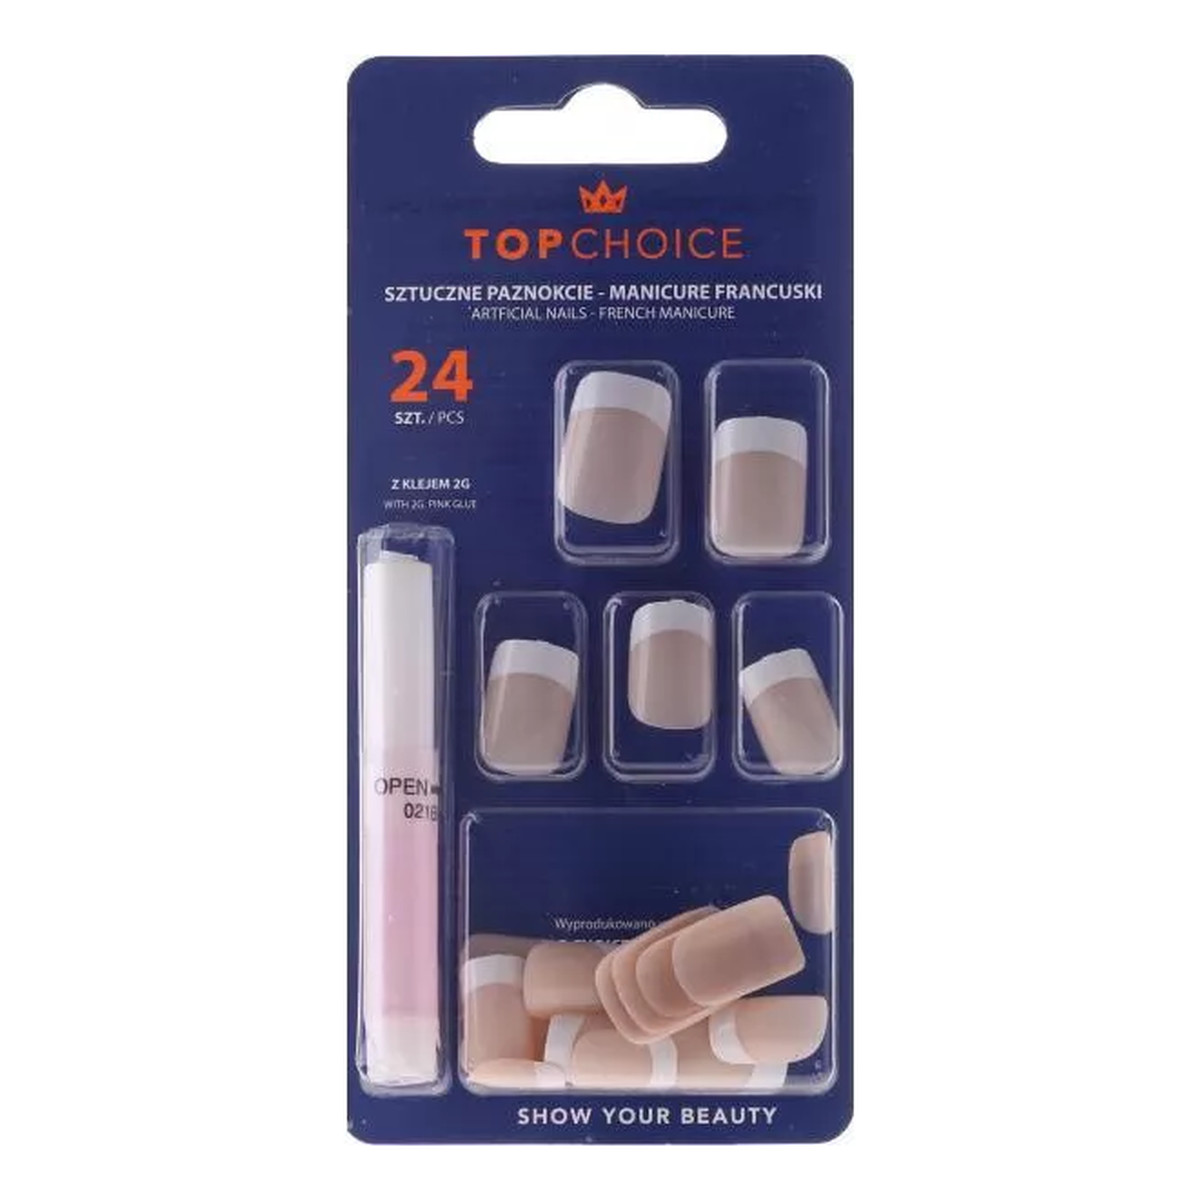 Top Choice French Manicure Sztuczne paznokcie 7866B beż (01)